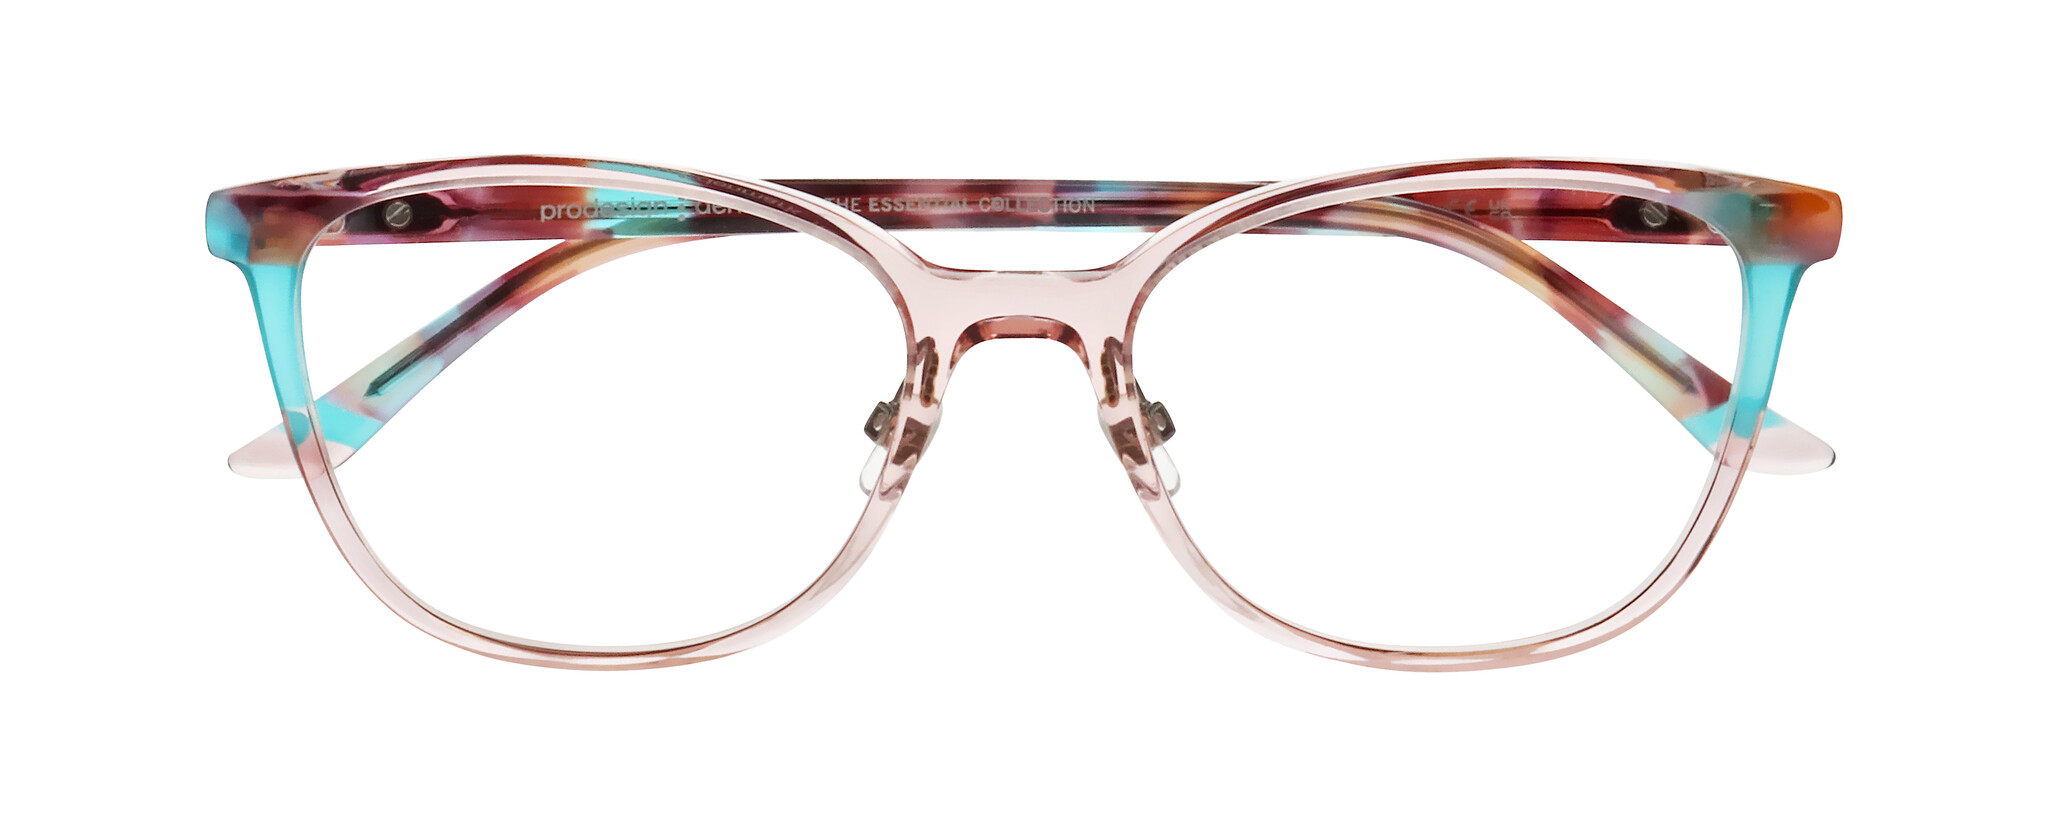 Essential - optical frames - Glasses - Prodesign Denmark - Design